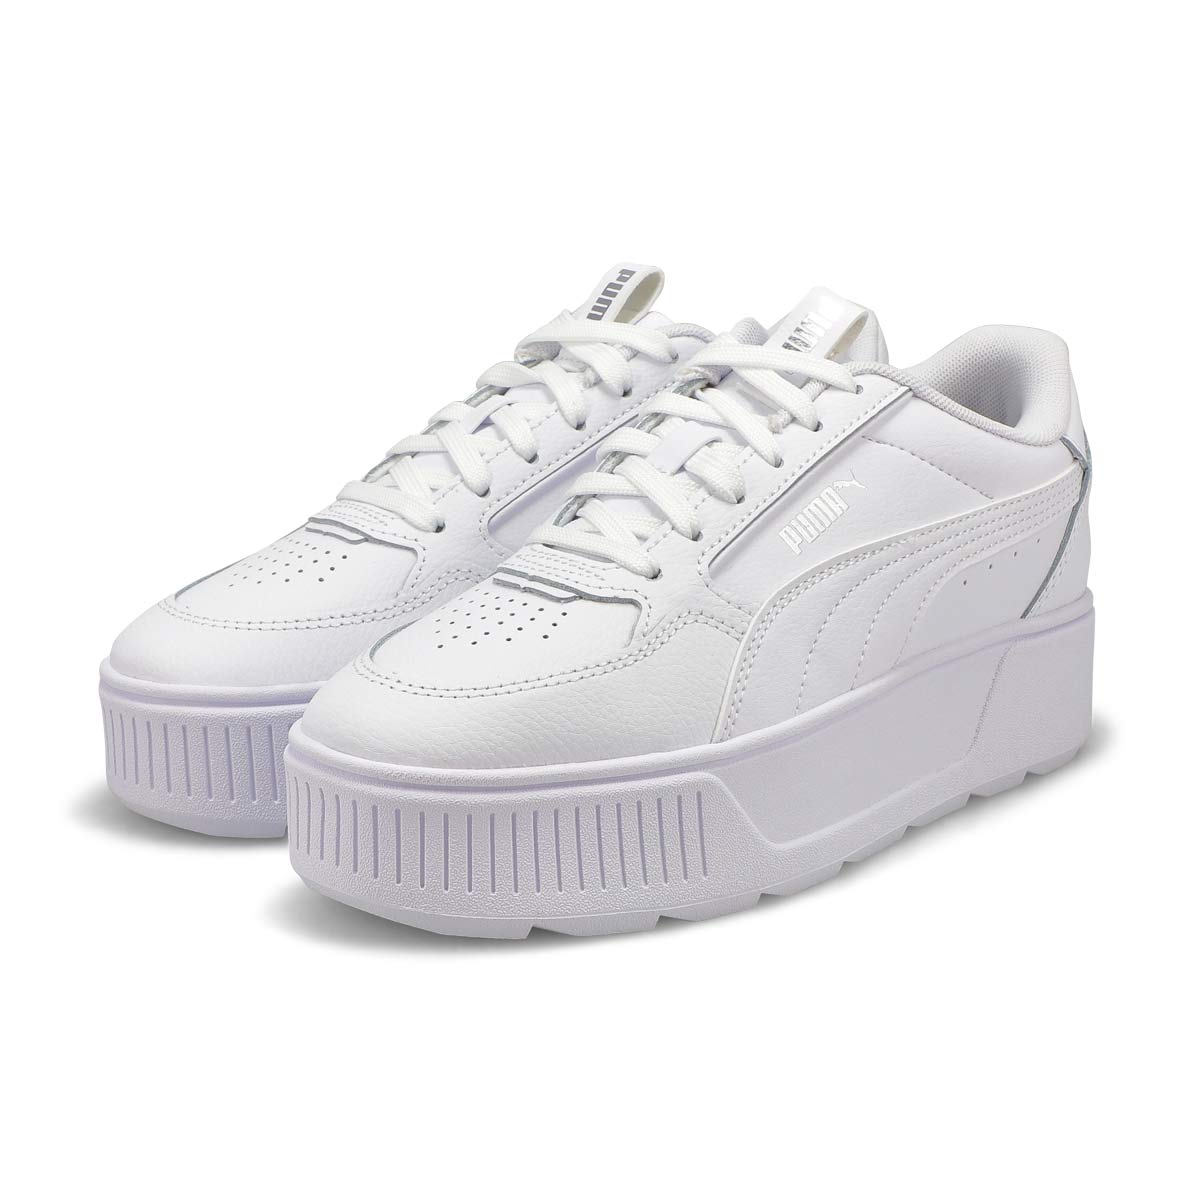 Girls' Karmen Rebelle Jr Sneaker - White